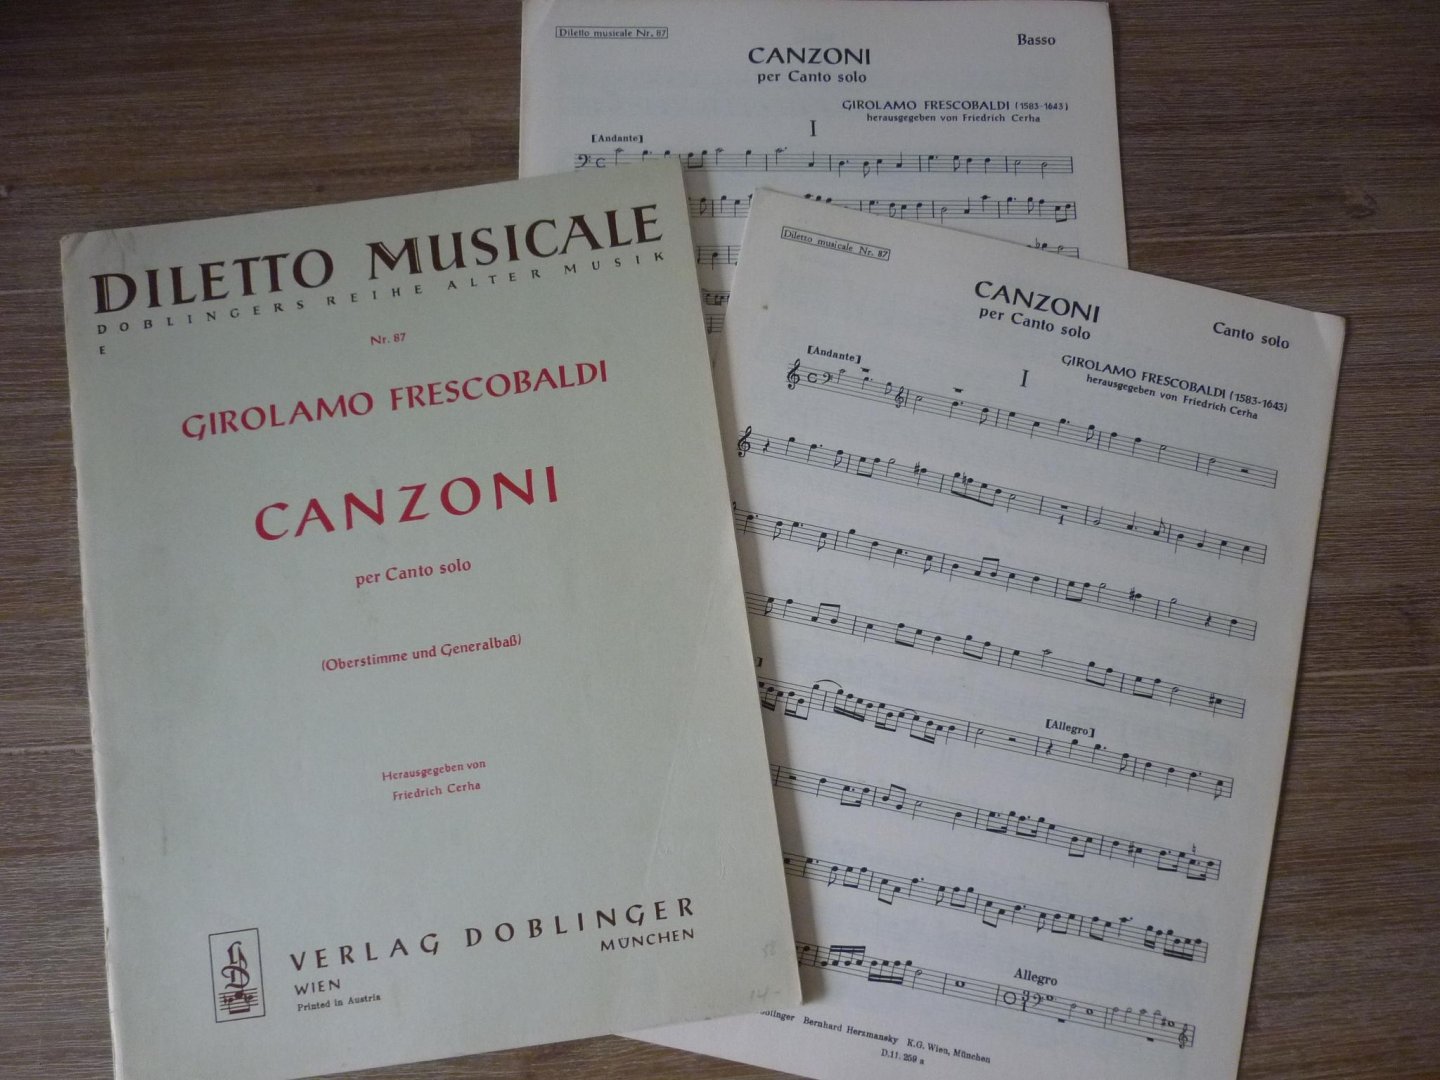 Frescobaldi, Girolamo (1583-1643) - Canzoni per Canto solo (Oberstimme und Generalbaß); voor: Sopraanblokfluit [viool], basso continuo; Herausgegeben von Friedrich Cerha; (Diletto Musicale Nr. 87)